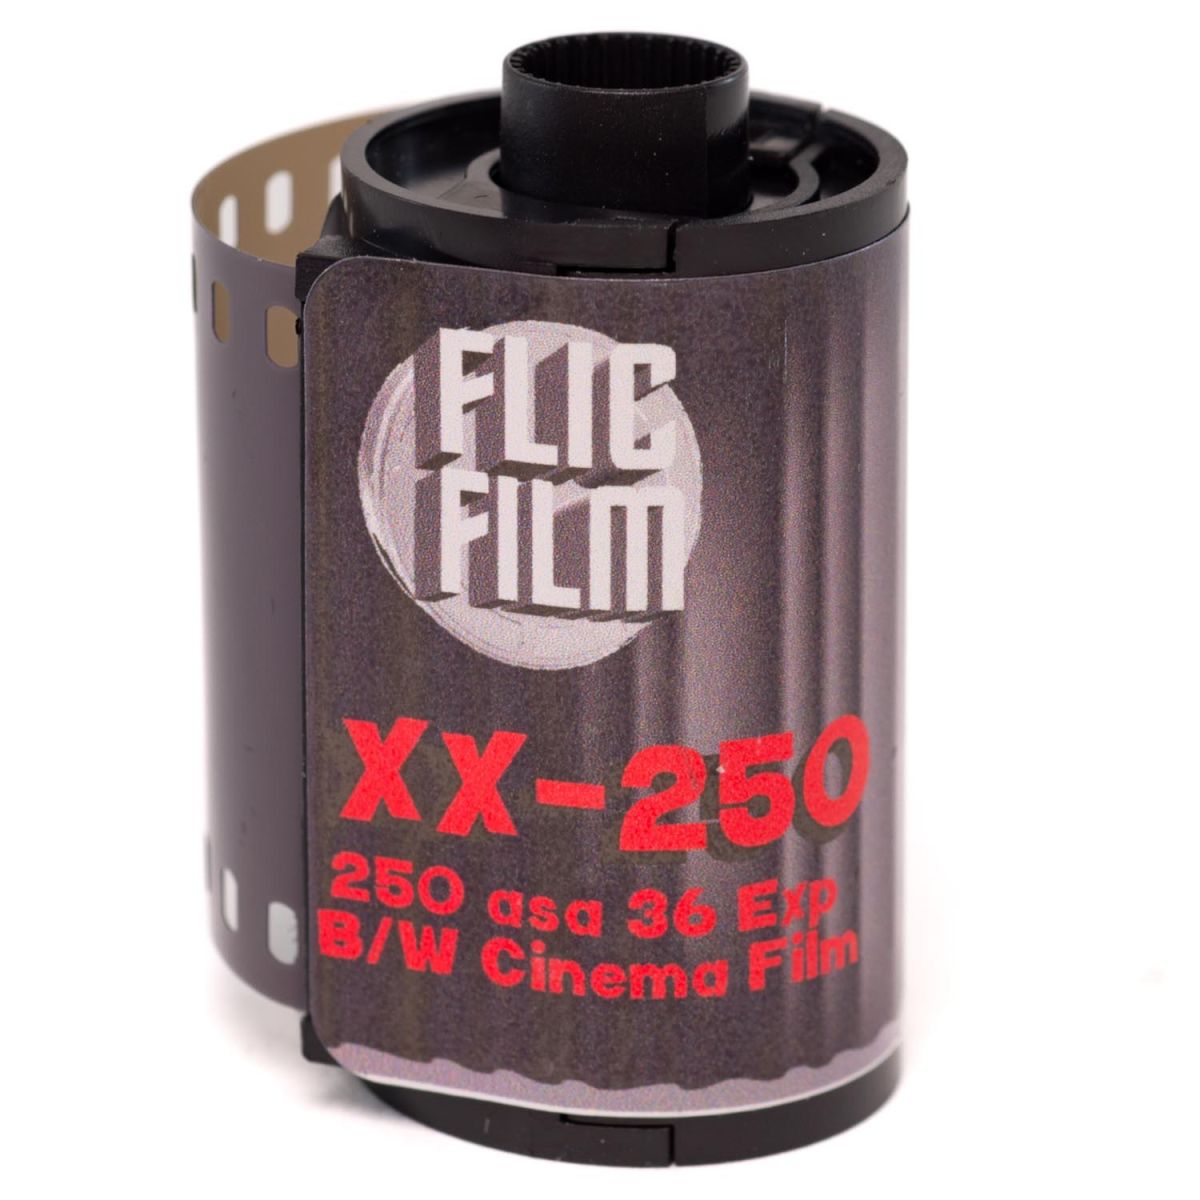 Flic Film XX-250 136-35